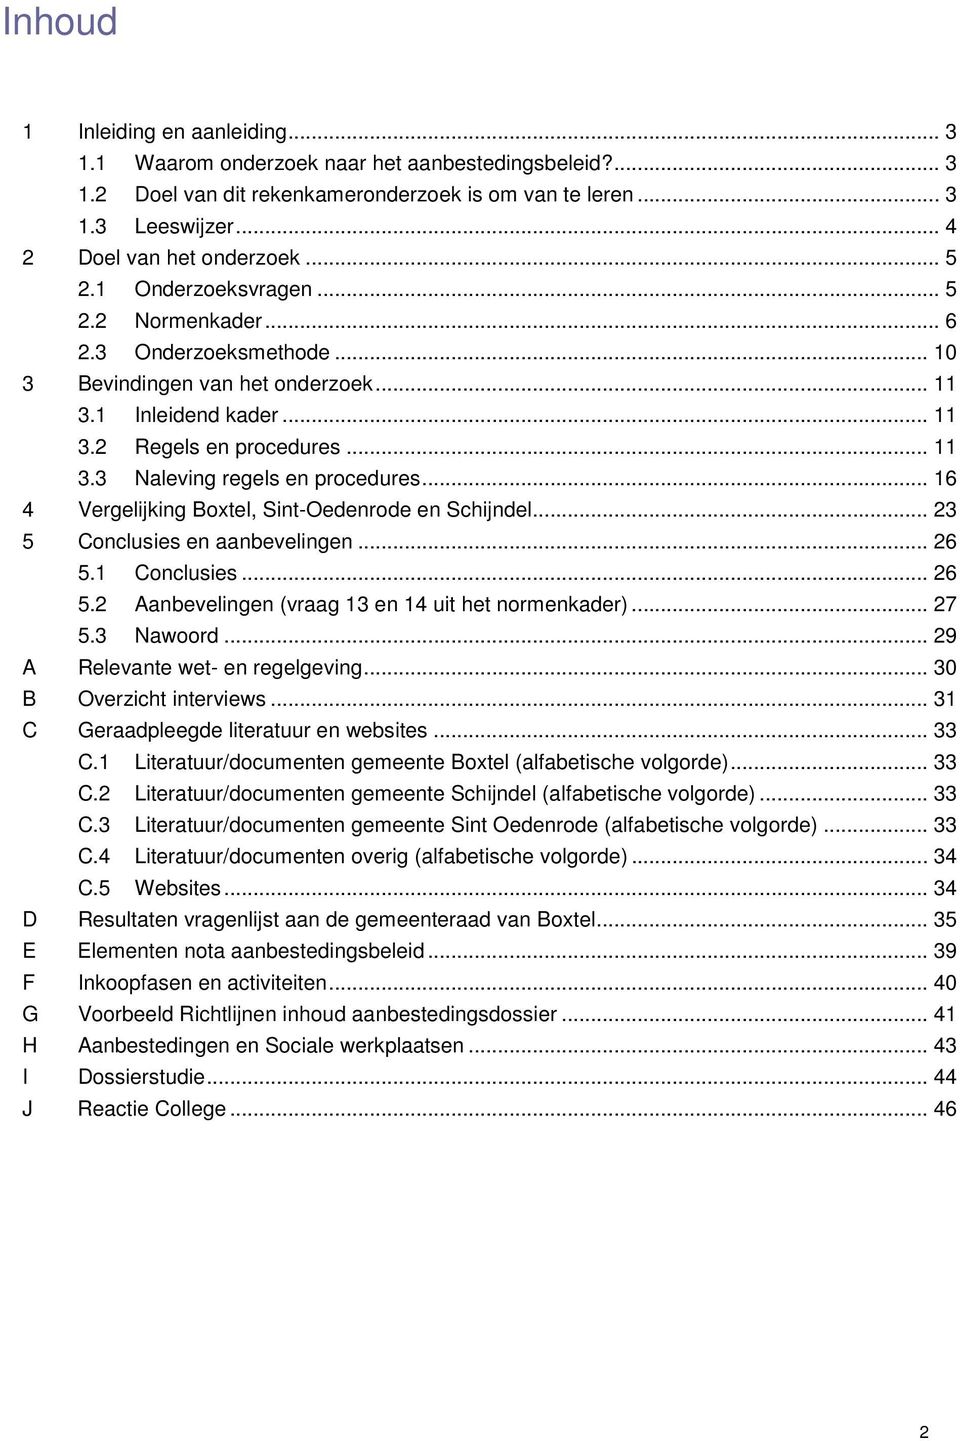 .. 16 4 Vergelijking Boxtel, Sint-Oedenrode en Schijndel... 23 5 Conclusies en aanbevelingen... 26 5.1 Conclusies... 26 5.2 Aanbevelingen (vraag 13 en 14 uit het normenkader)... 27 5.3 Nawoord.